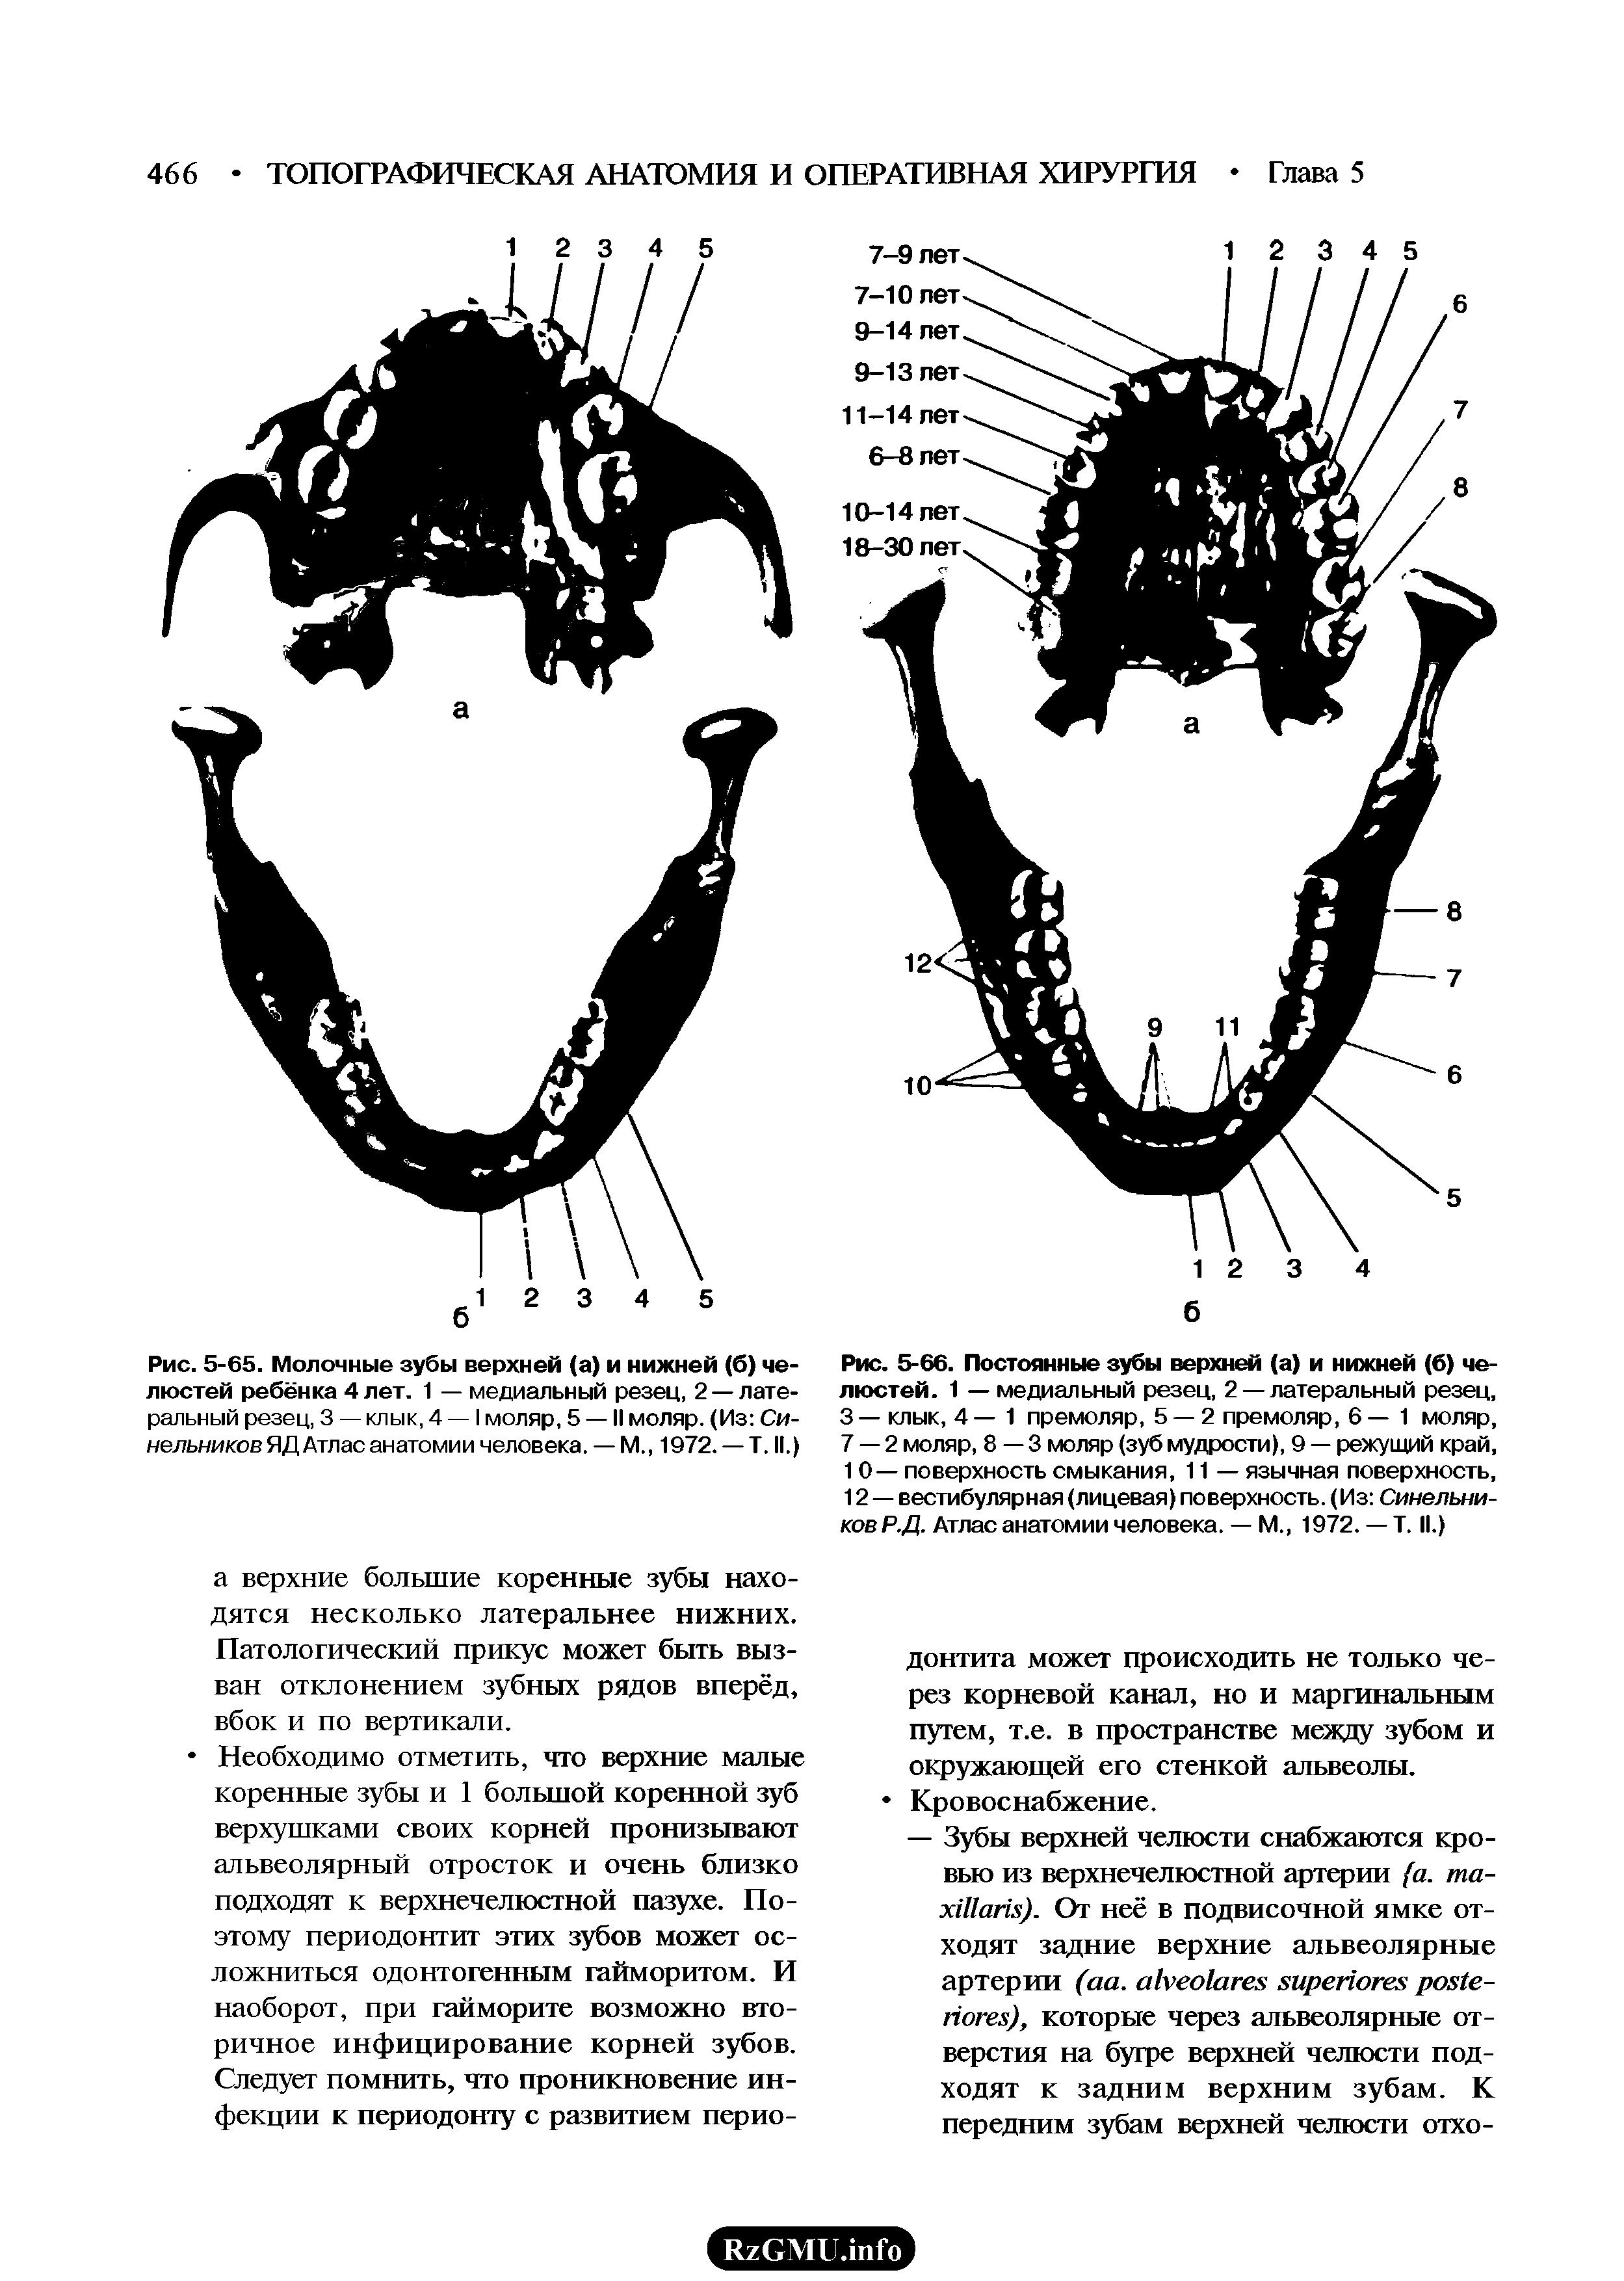 Рис. 5-66. Постоянные зубы верхней (а) и нижней (б) челюстей. 1 — медиальный резец, 2 — латеральный резец, 3— клык, 4—1 премоляр, 5 — 2 премоляр, 6— 1 моляр, 7 — 2 моляр, 8—3 моляр (зуб мудрости), 9 — режущий край, 10— поверхность смыкания, 11 — язычная поверхность, 12 — вестибулярная (лицевая) поверхность. (Из Синельников Р.Д. Атлас анатомии человека. — М 1972. — Т. II.)...